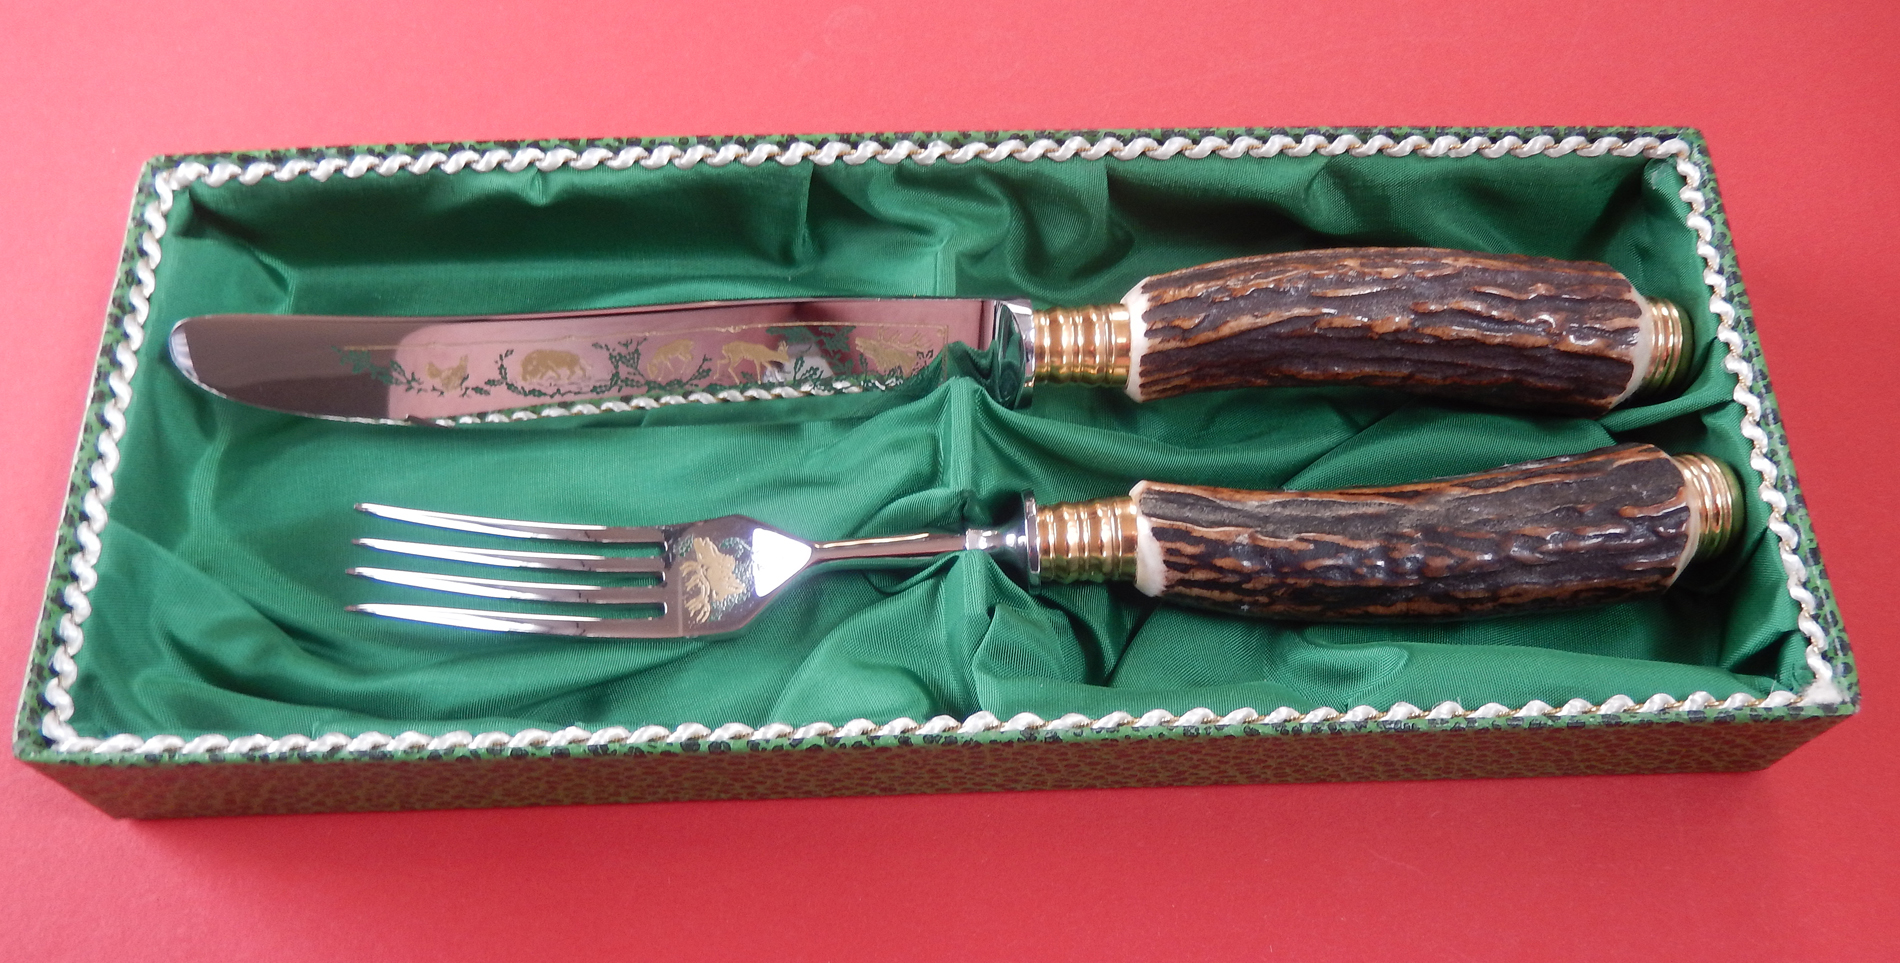 Messer und Gabel Rehwappen Griff aus echtem Hirschhorn, von Linder bei iss bestellen